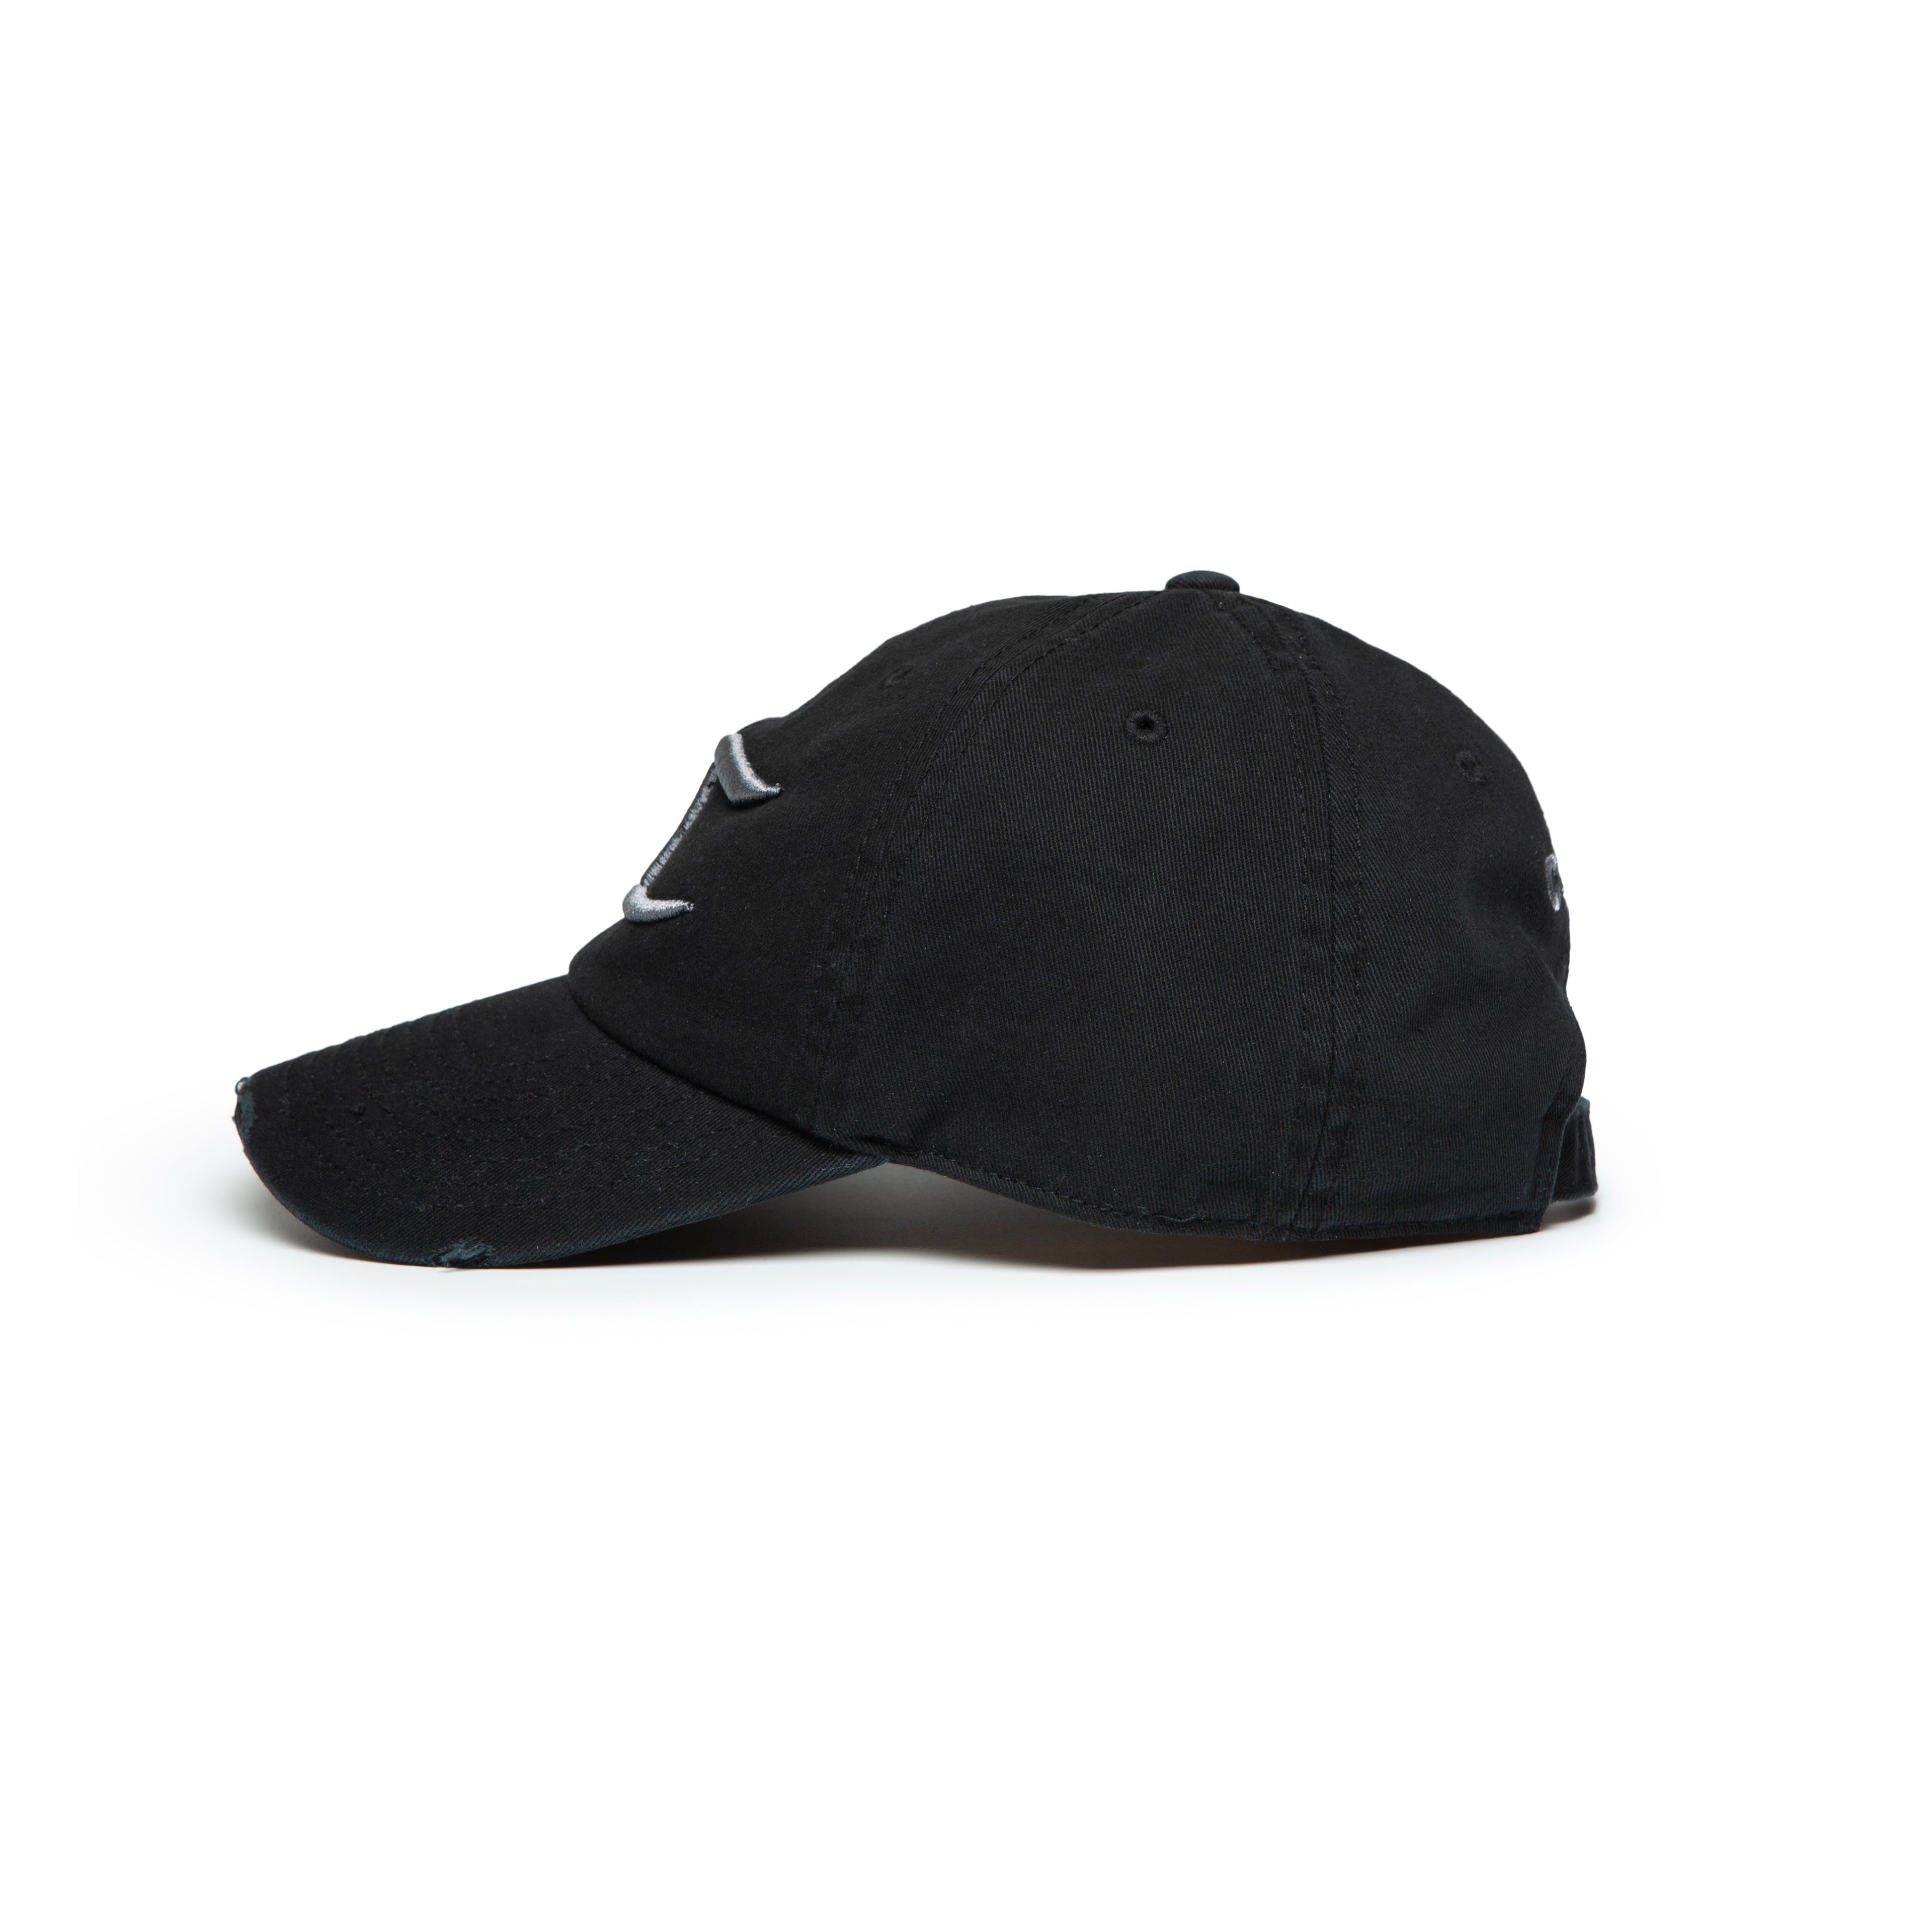 ORNAMENT CAP BLACK